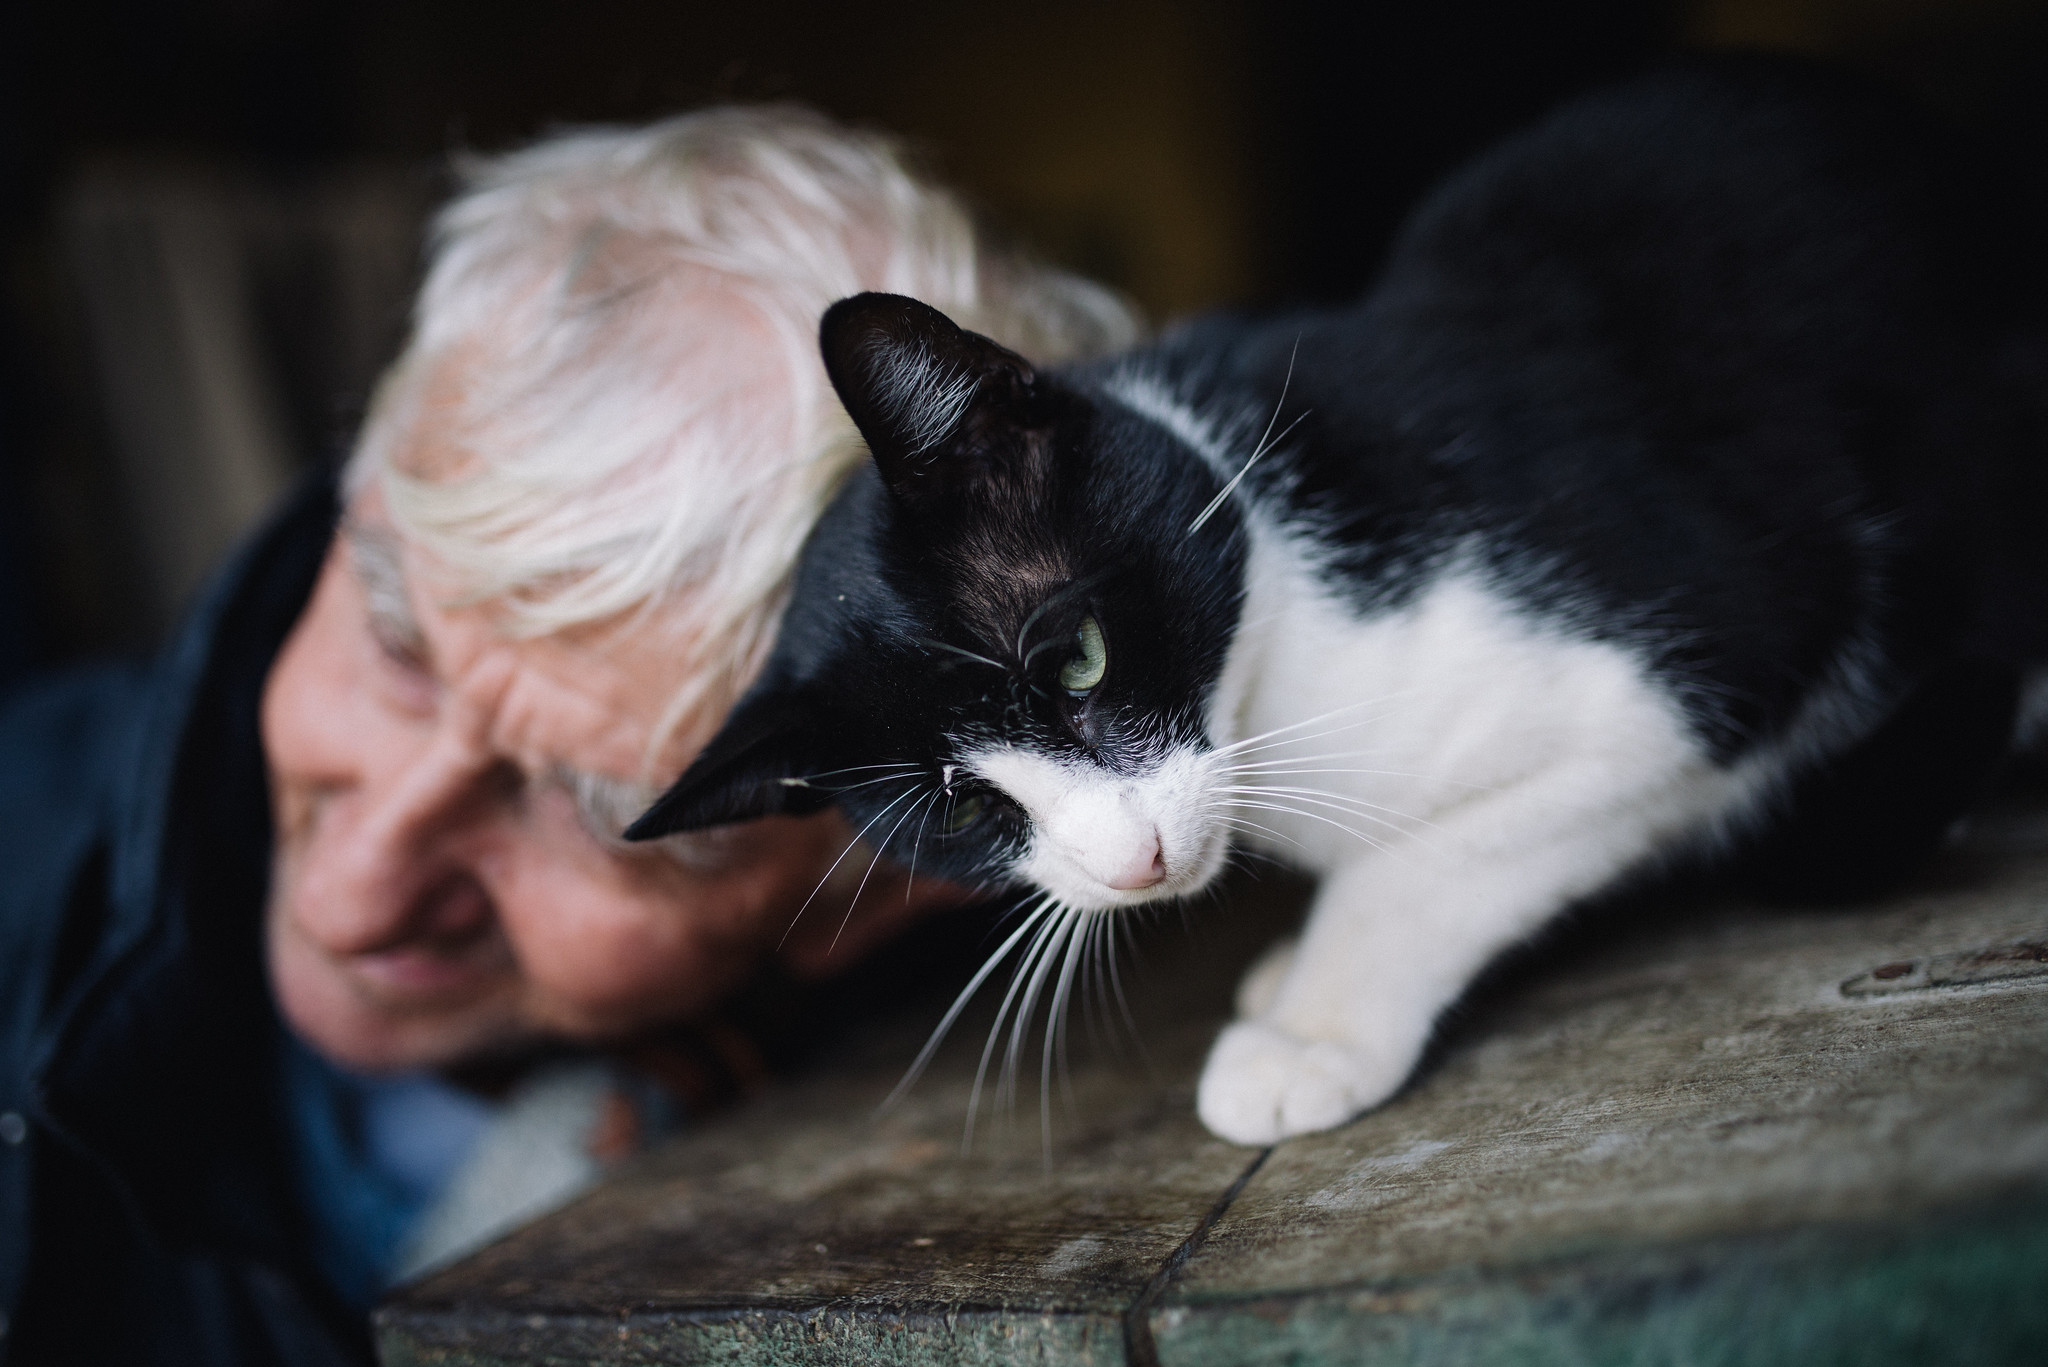 Primer plano de un gato jugando con un anciano | Foto: Flickr.com/shixart1985 (CC BY 2.0)